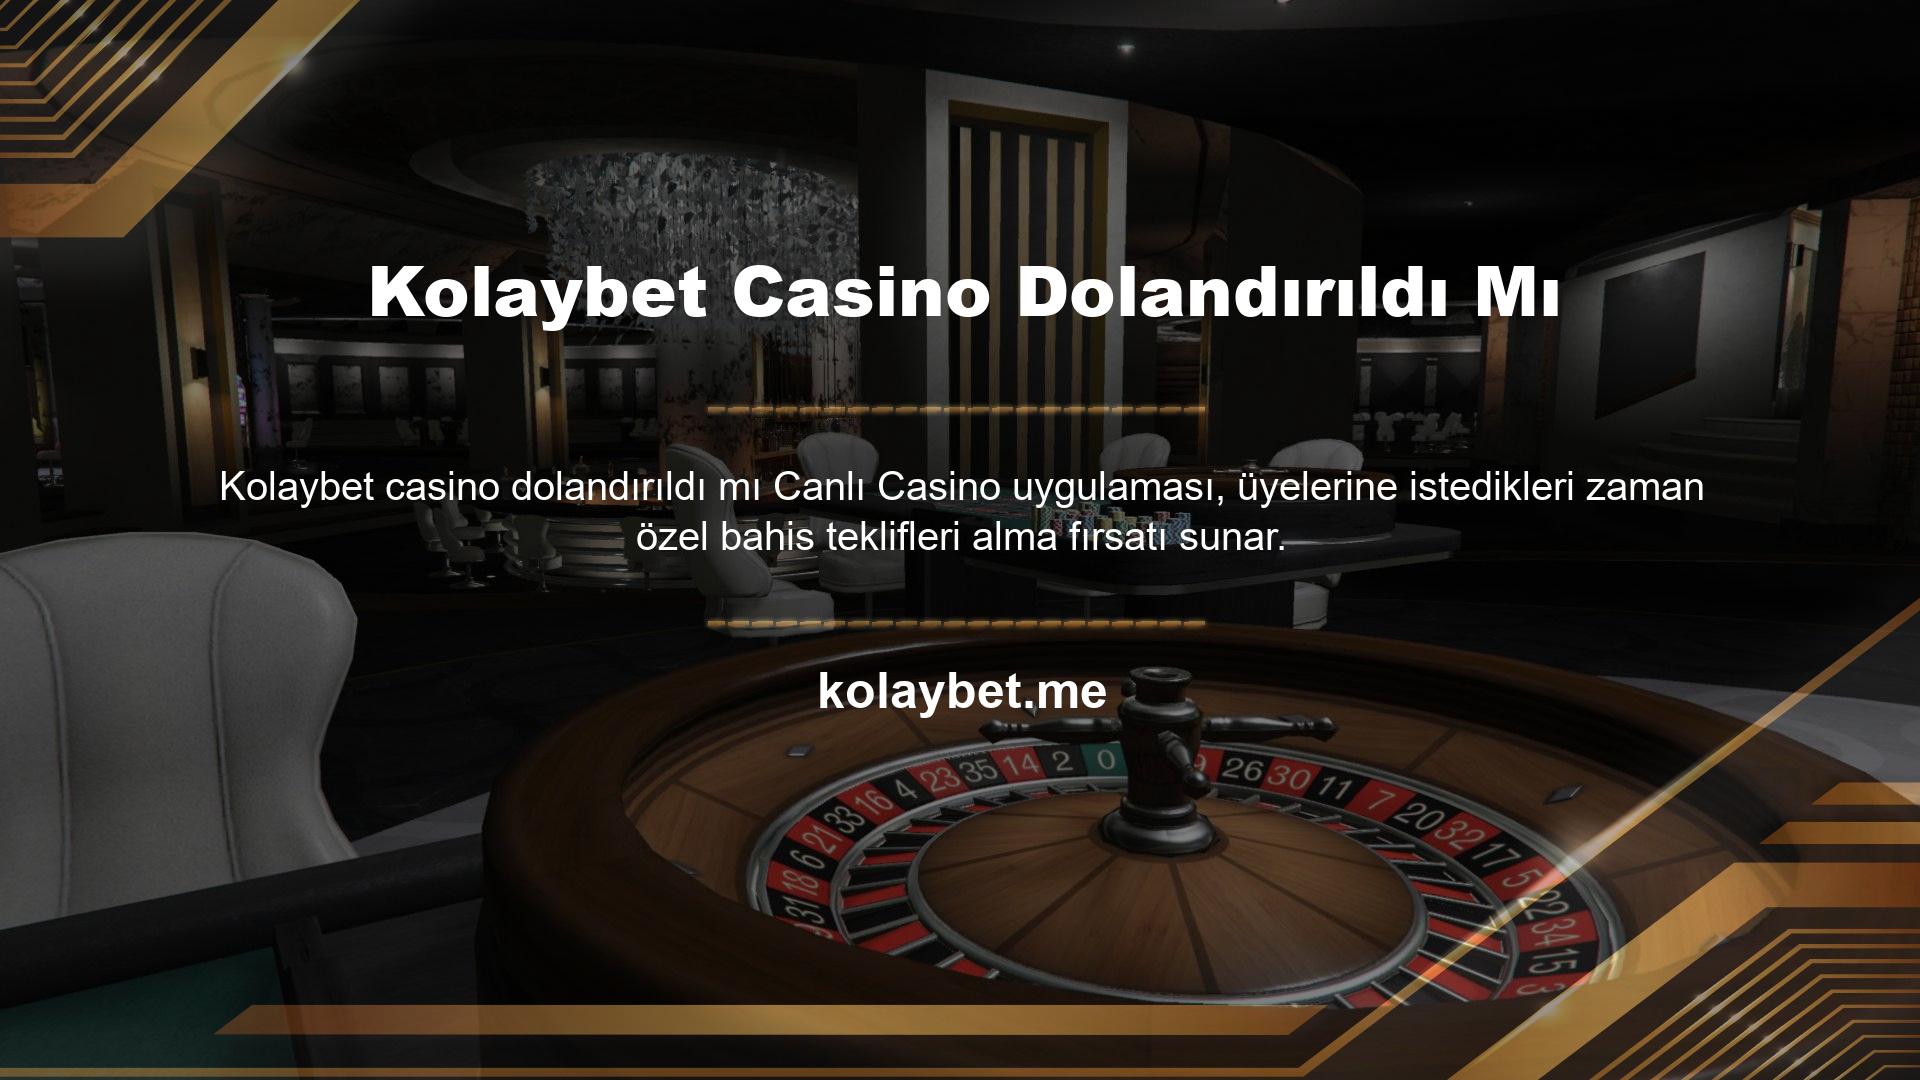 Kolaybet canlı casino oyunları, gerçek rakipler ve krupiyeler ile işbirliği içinde geliştirilmiştir